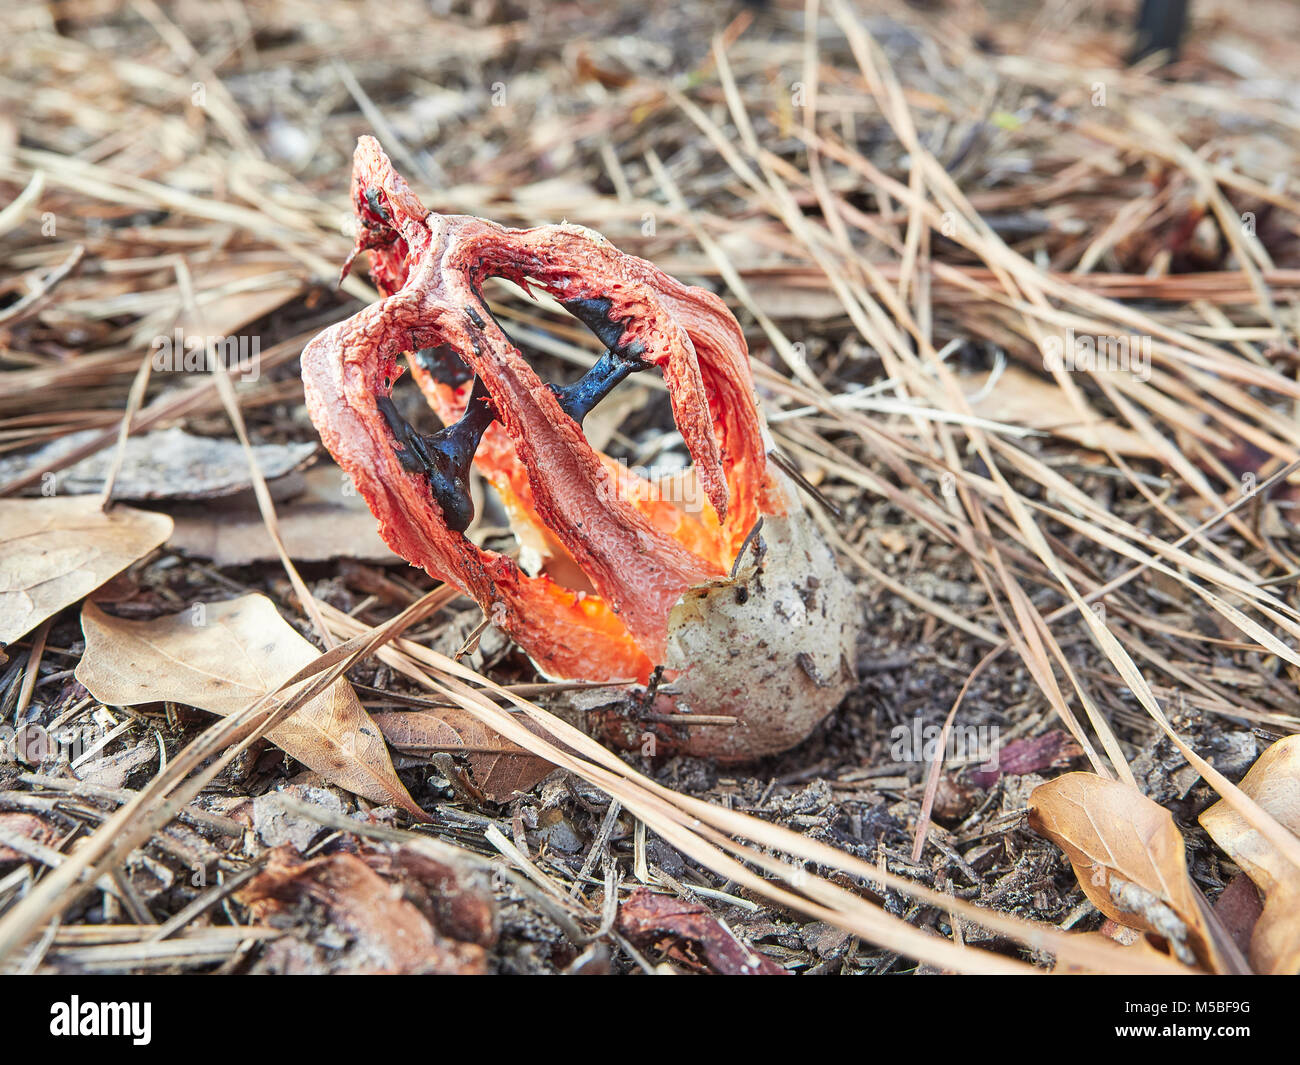 Clathrus Ruber, Cage Exemplar des Gemeinen Stinkmorchels, oder Korb Exemplar des Gemeinen Stinkmorchels wachsen auf Waldboden, Montgomery, Alabama, USA. Stockfoto